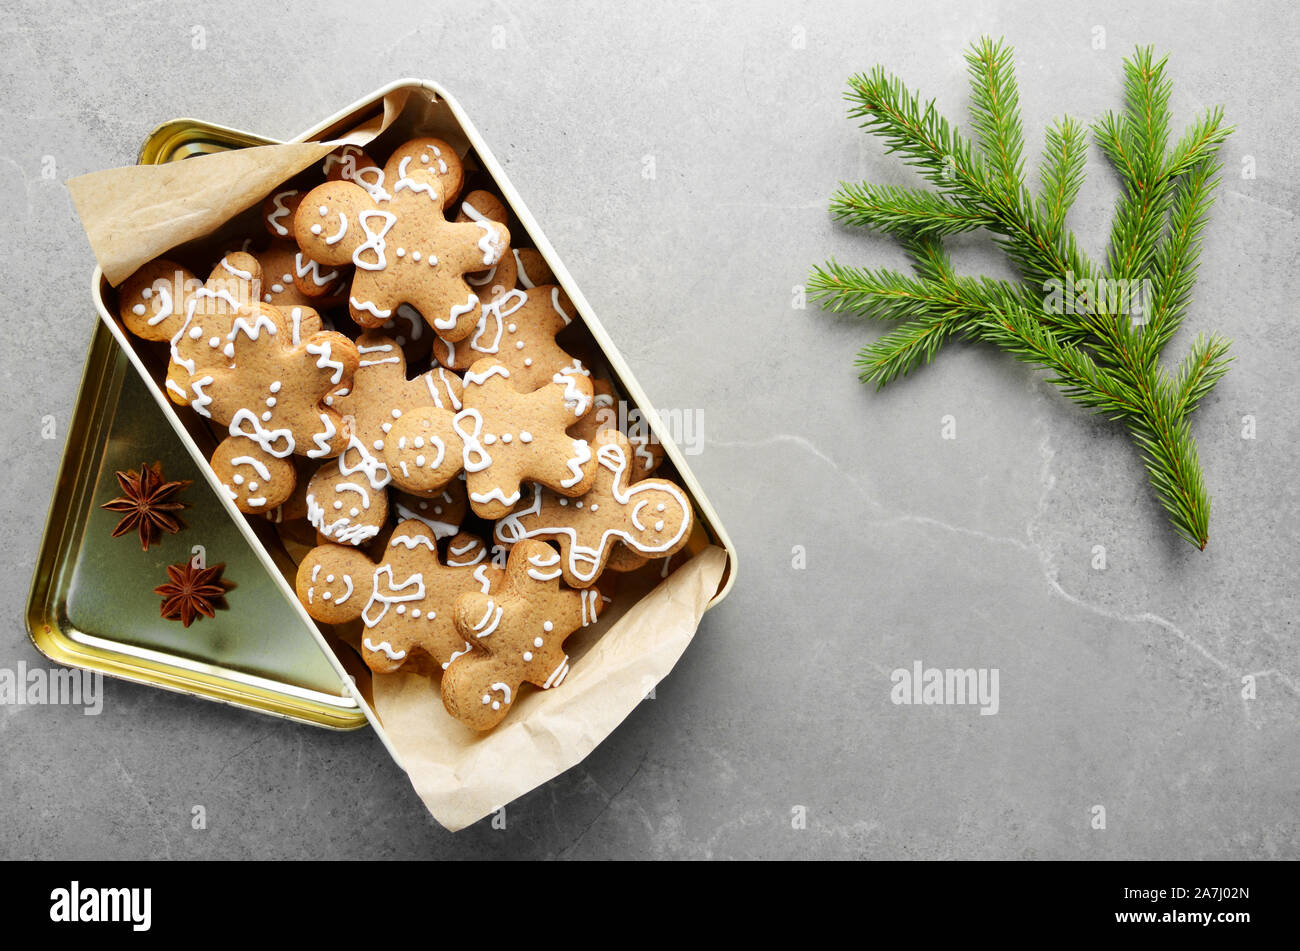 Christmas background laicos plana con cookie box y fir palm en mesa de piedra Foto de stock